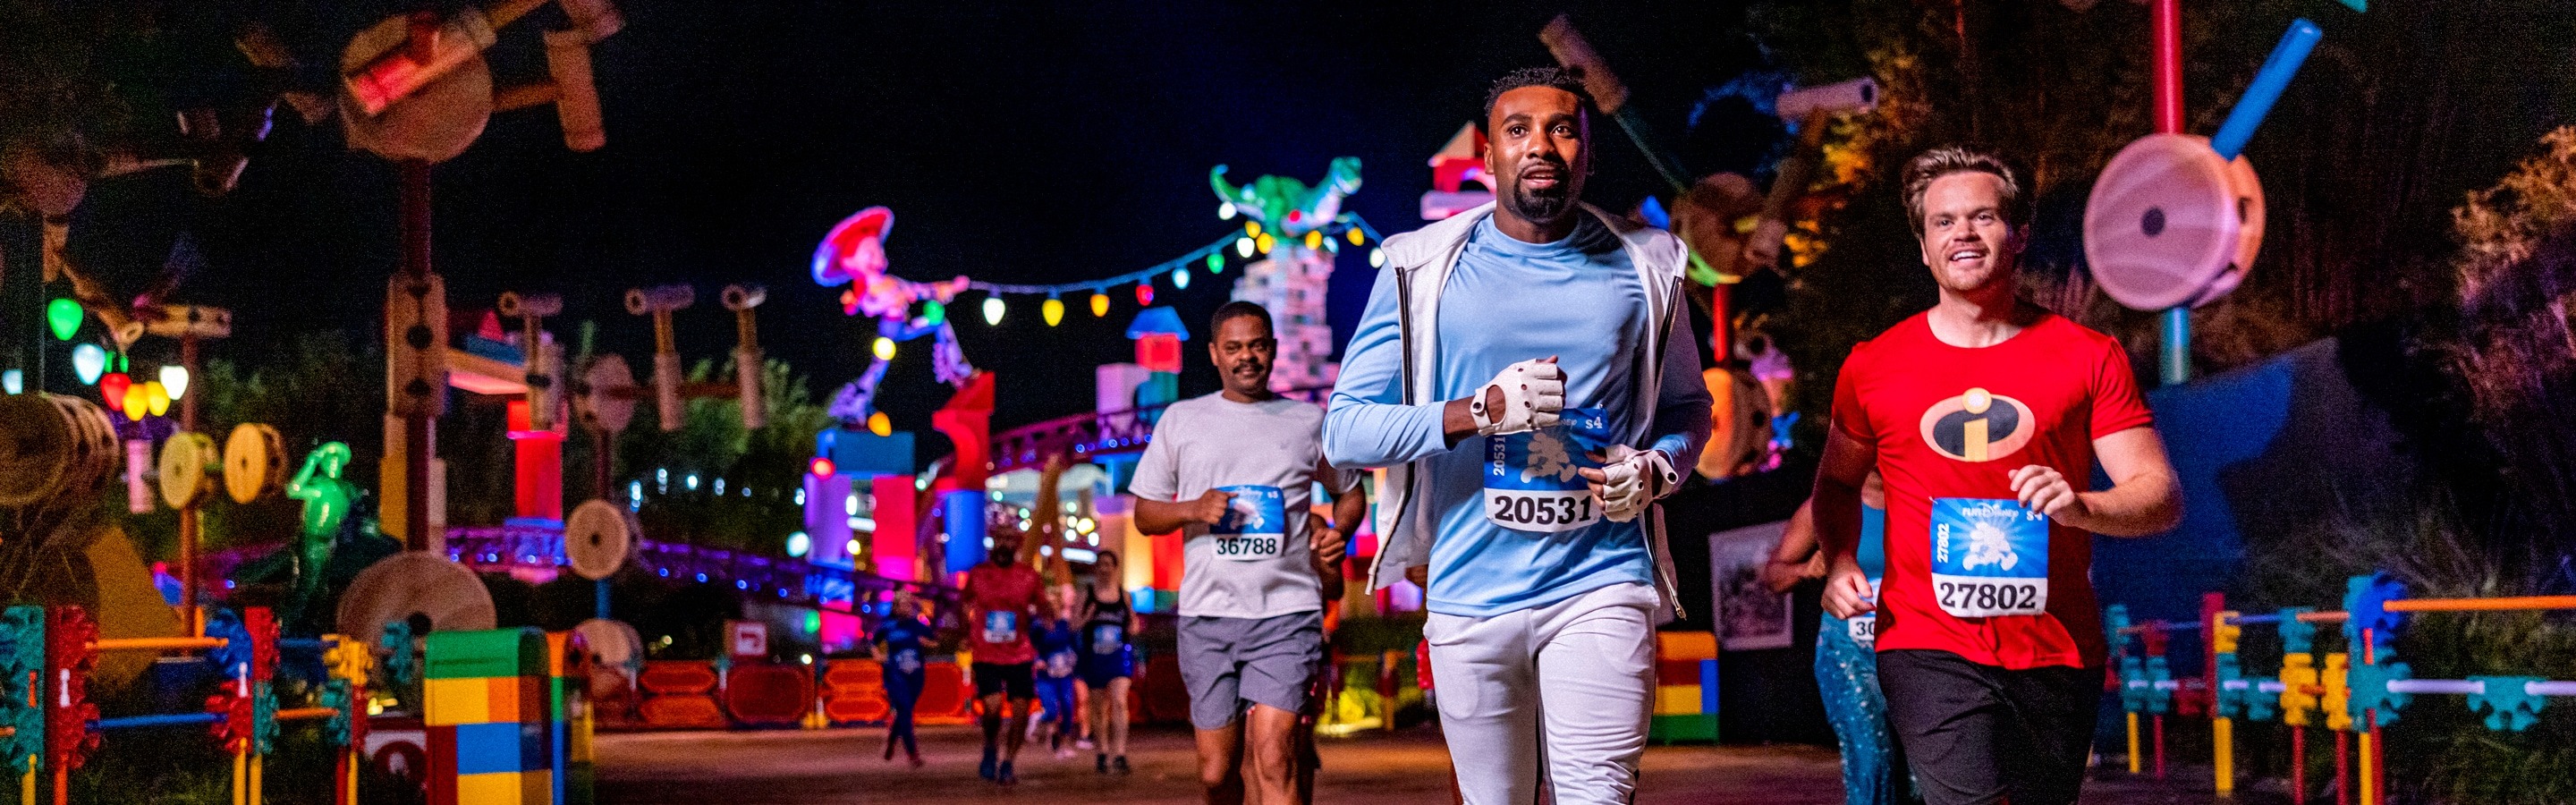 What Is The Best Disney Half Marathon 2017